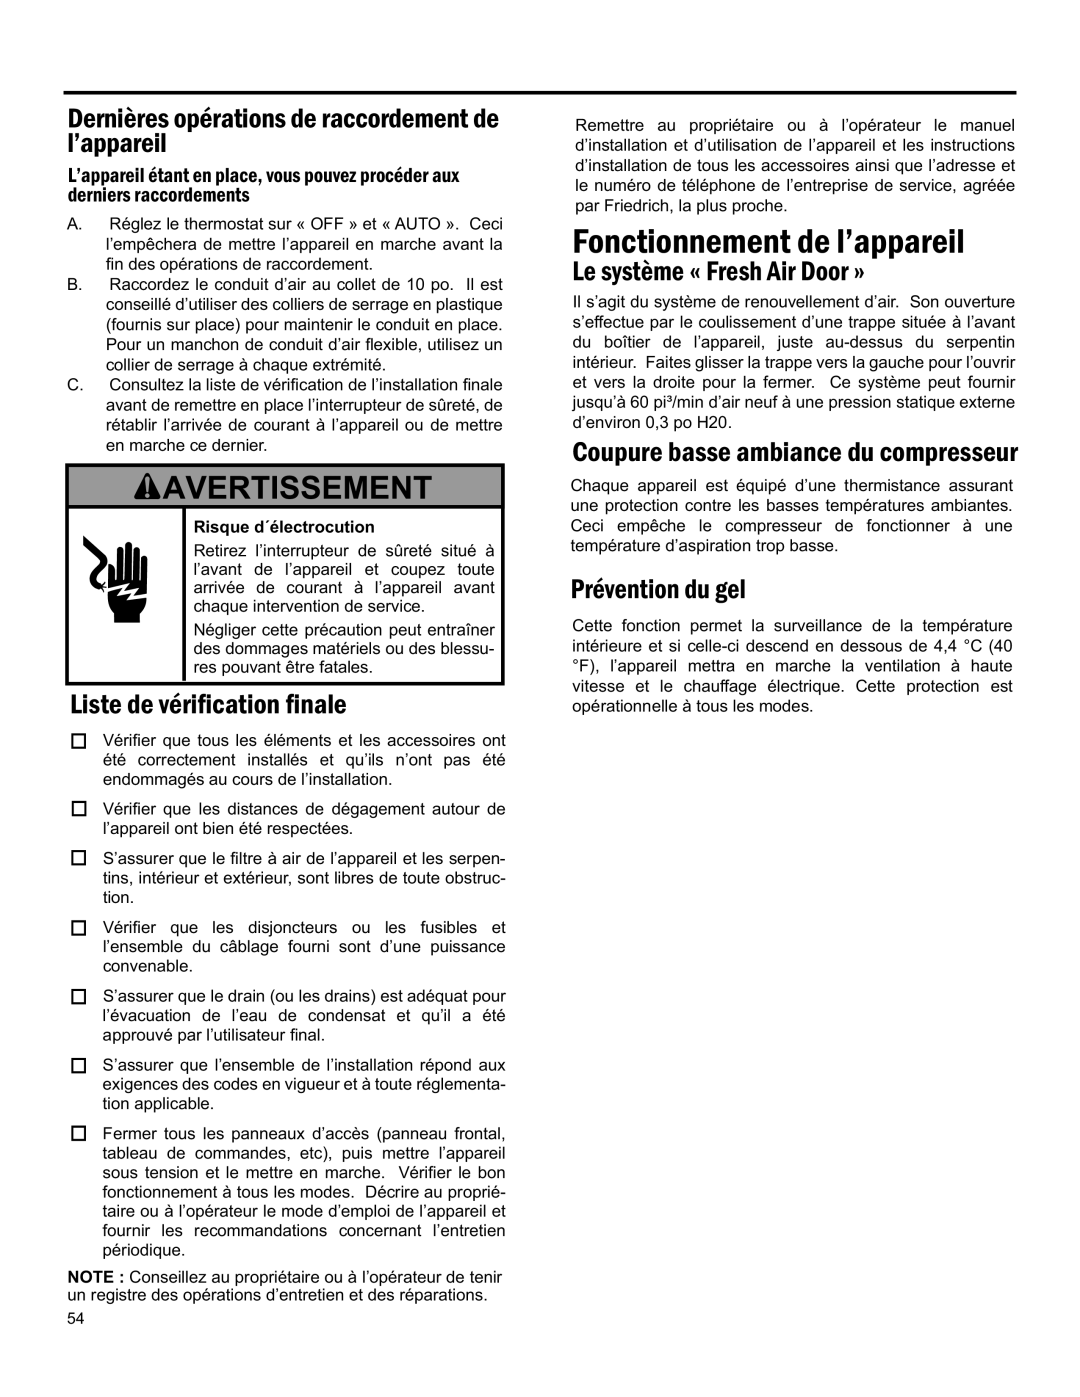 Friedrich 920-075-13 (1-11) Avertissement, Fonctionnement De L’Appareil, Liste De Vérification Finale, Prévention Du Gel 